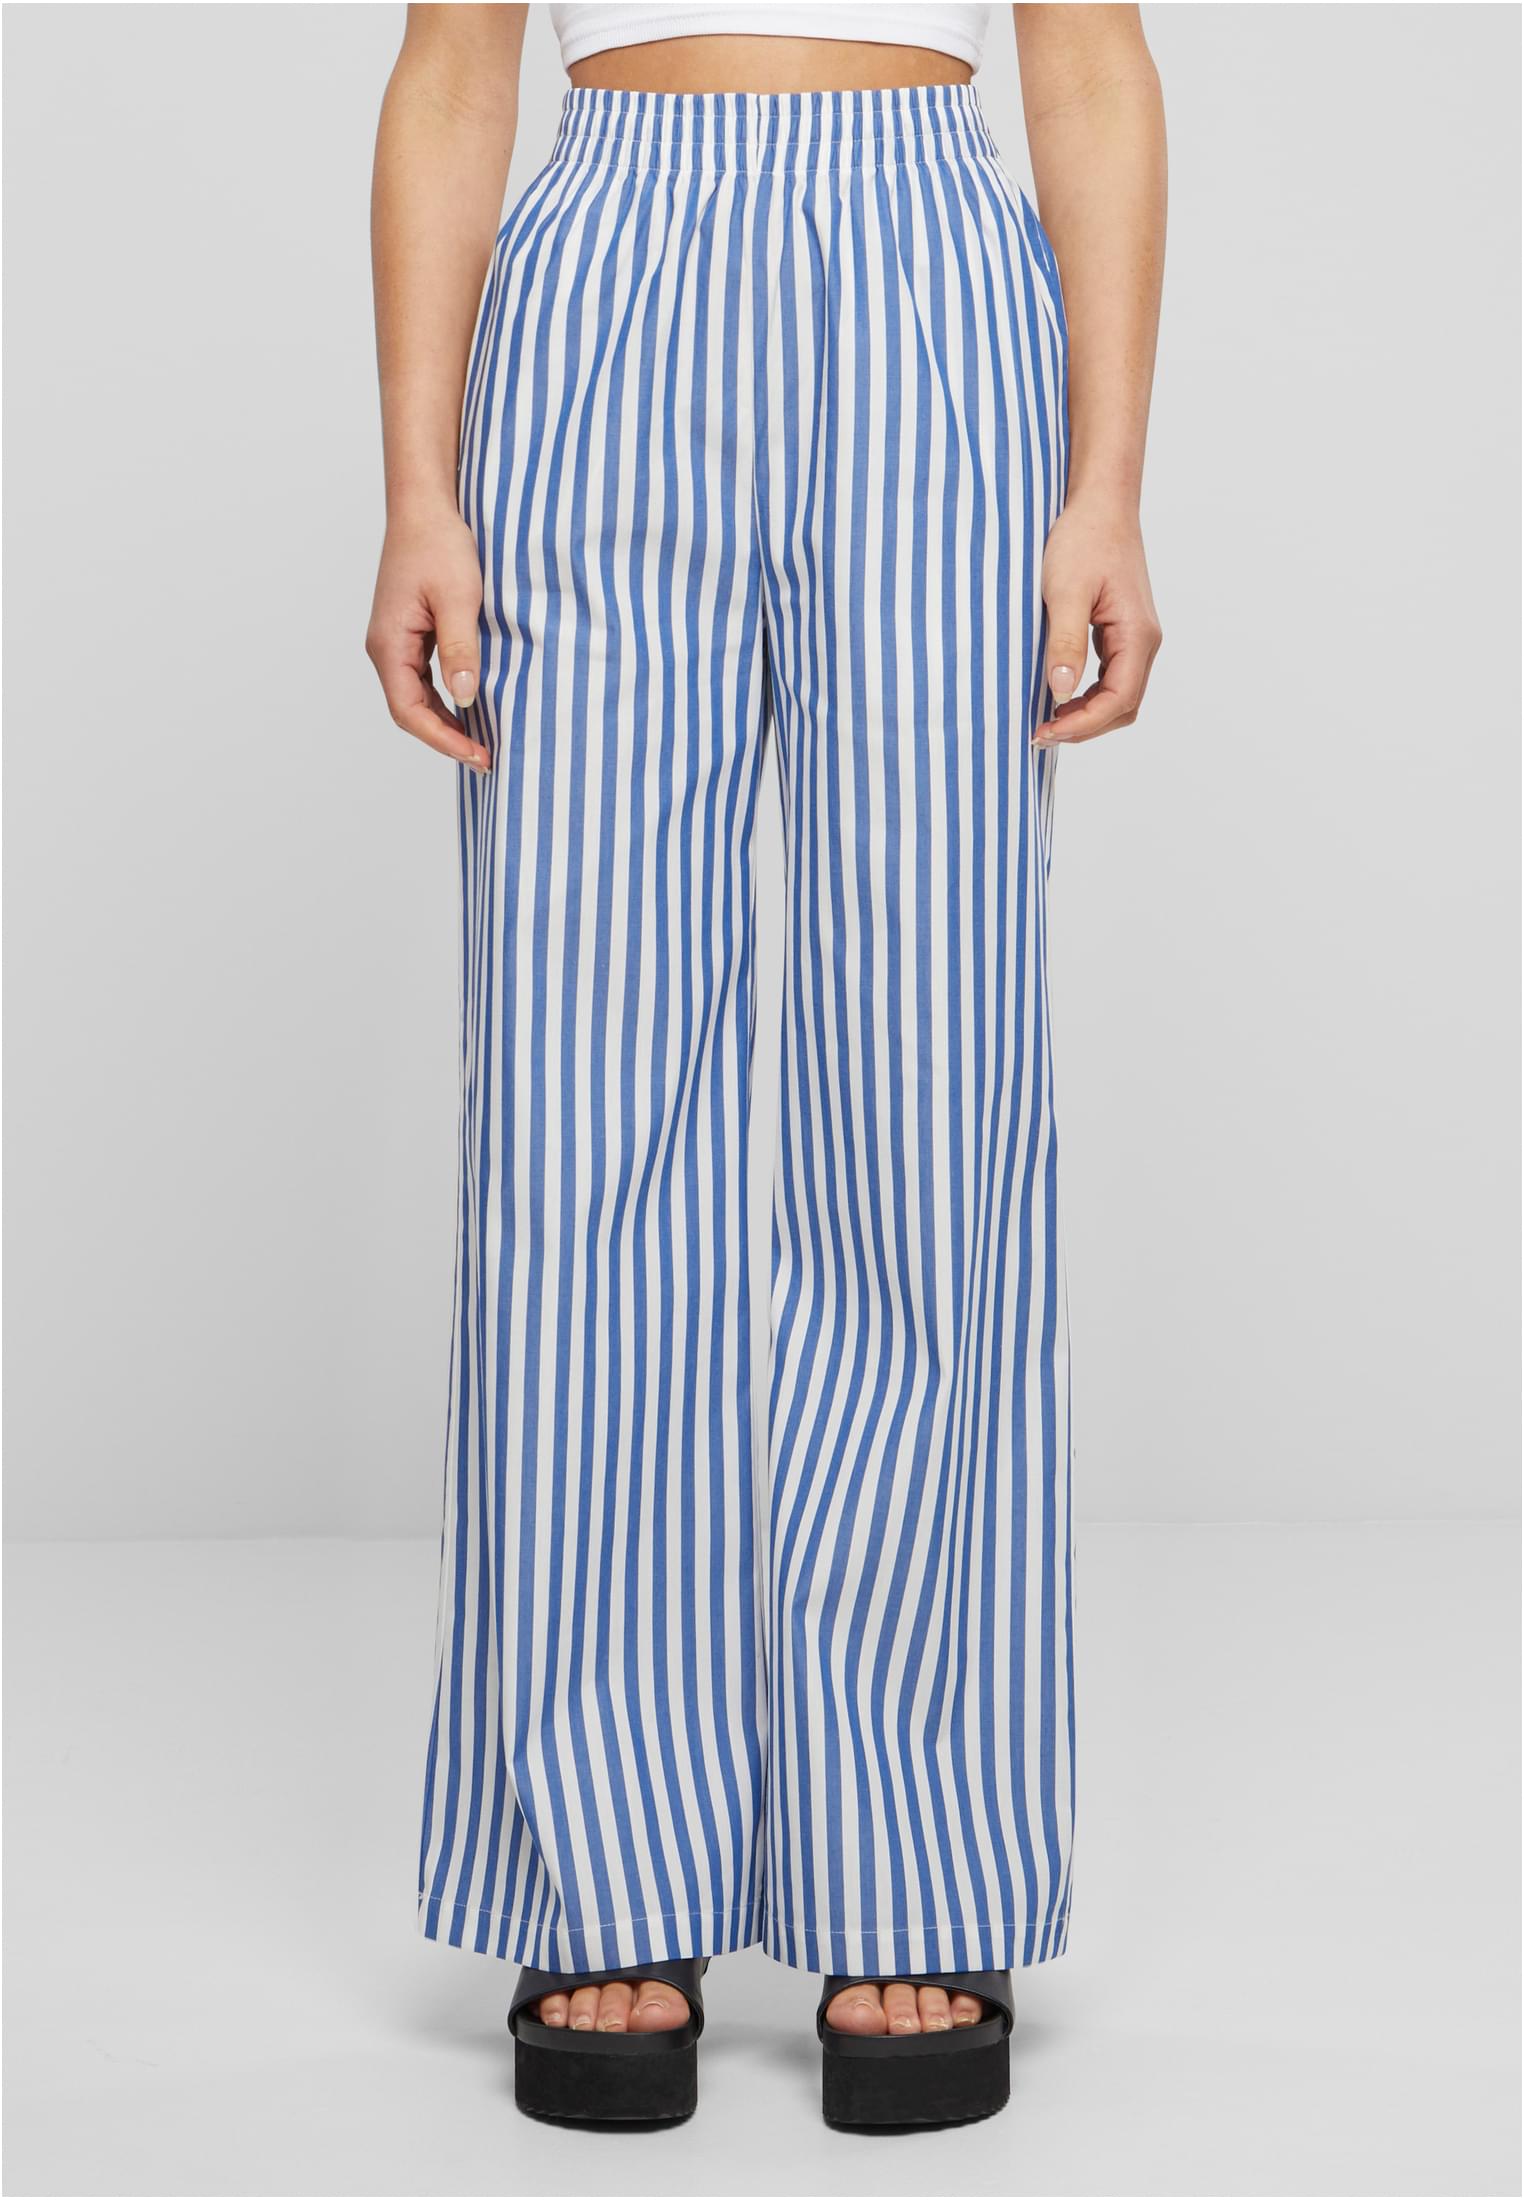 Dámské kalhoty Striped Loose bílo/modré